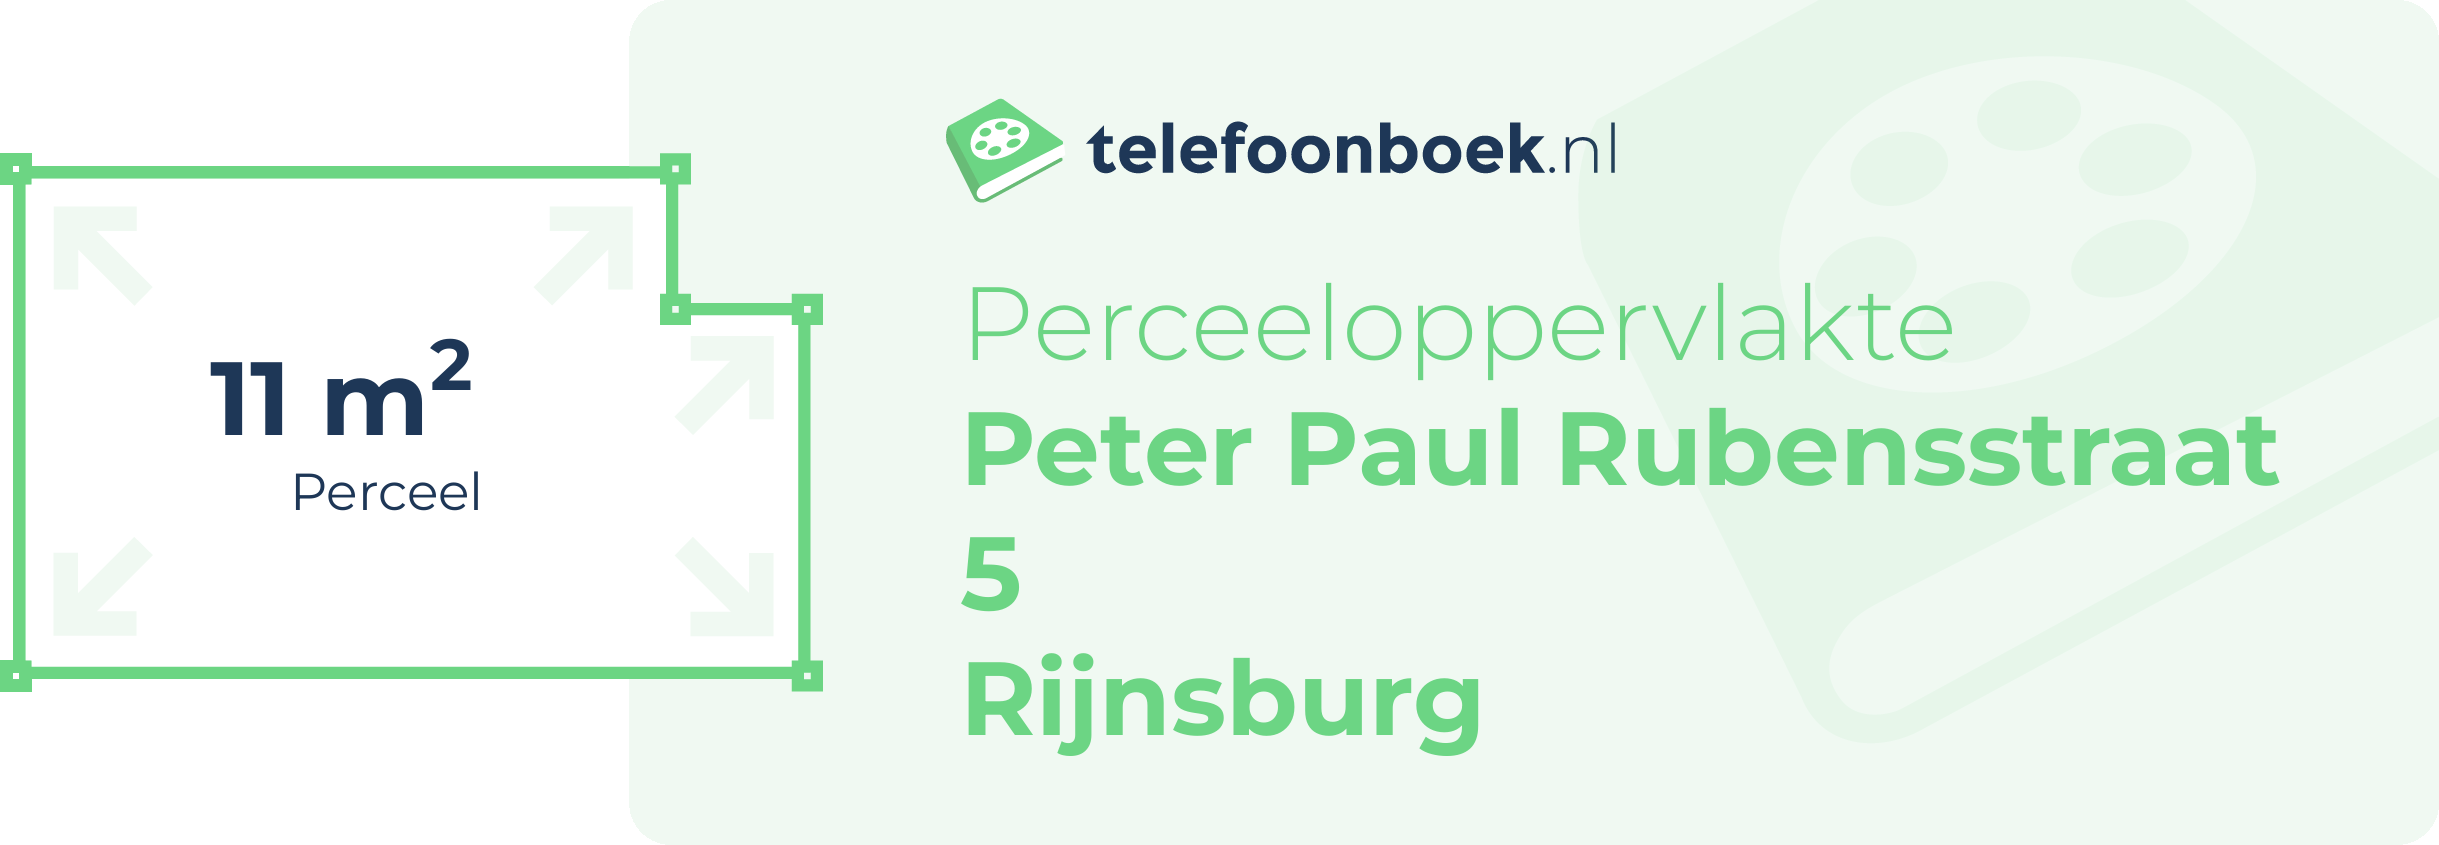 Perceeloppervlakte Peter Paul Rubensstraat 5 Rijnsburg